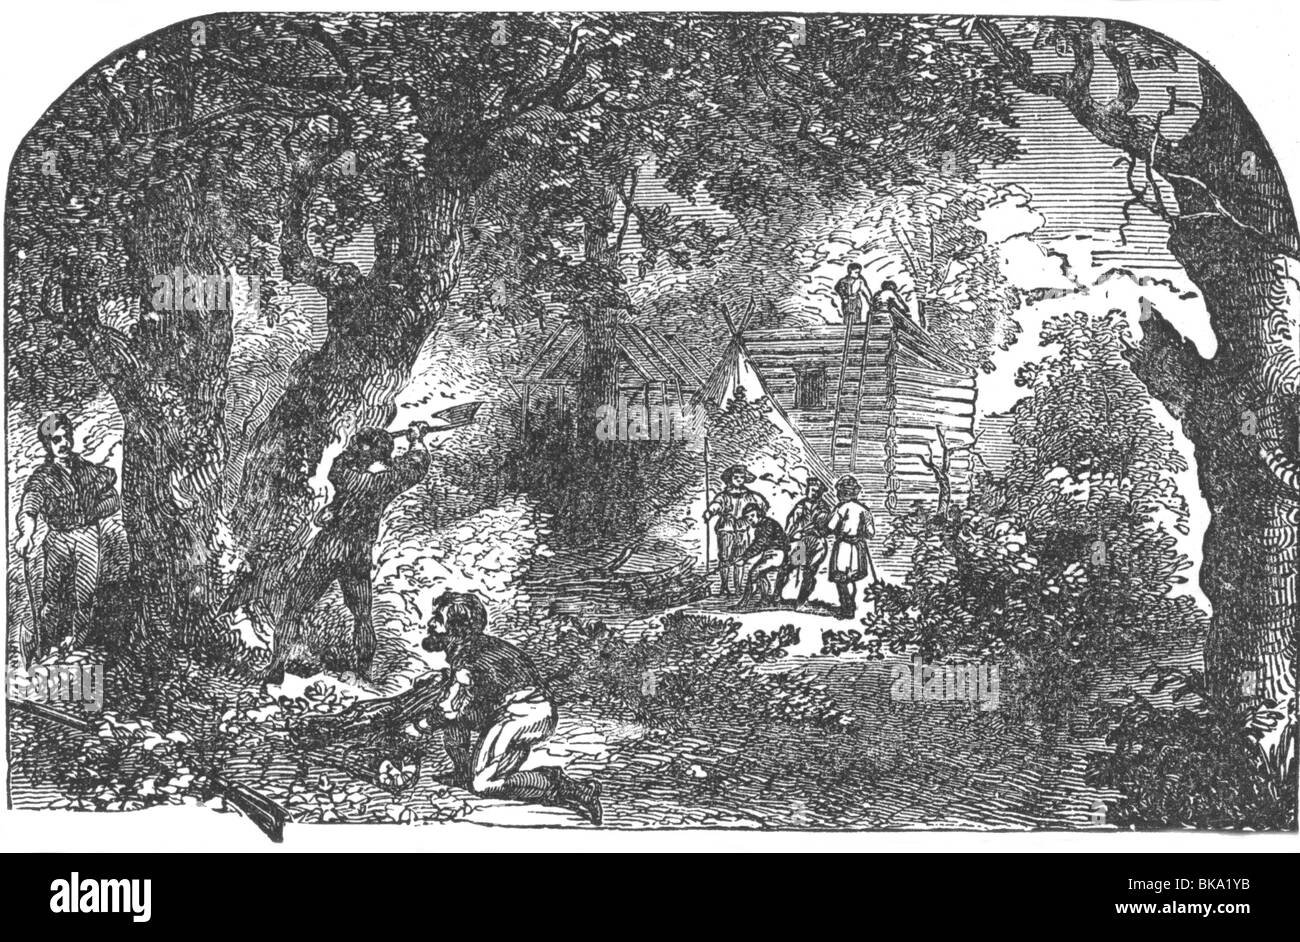 Geografía / viajes, Estados Unidos de América, gente, inmigrantes, colonos británicos bajo John Smith construyendo Jamestown 1607, Foto de stock